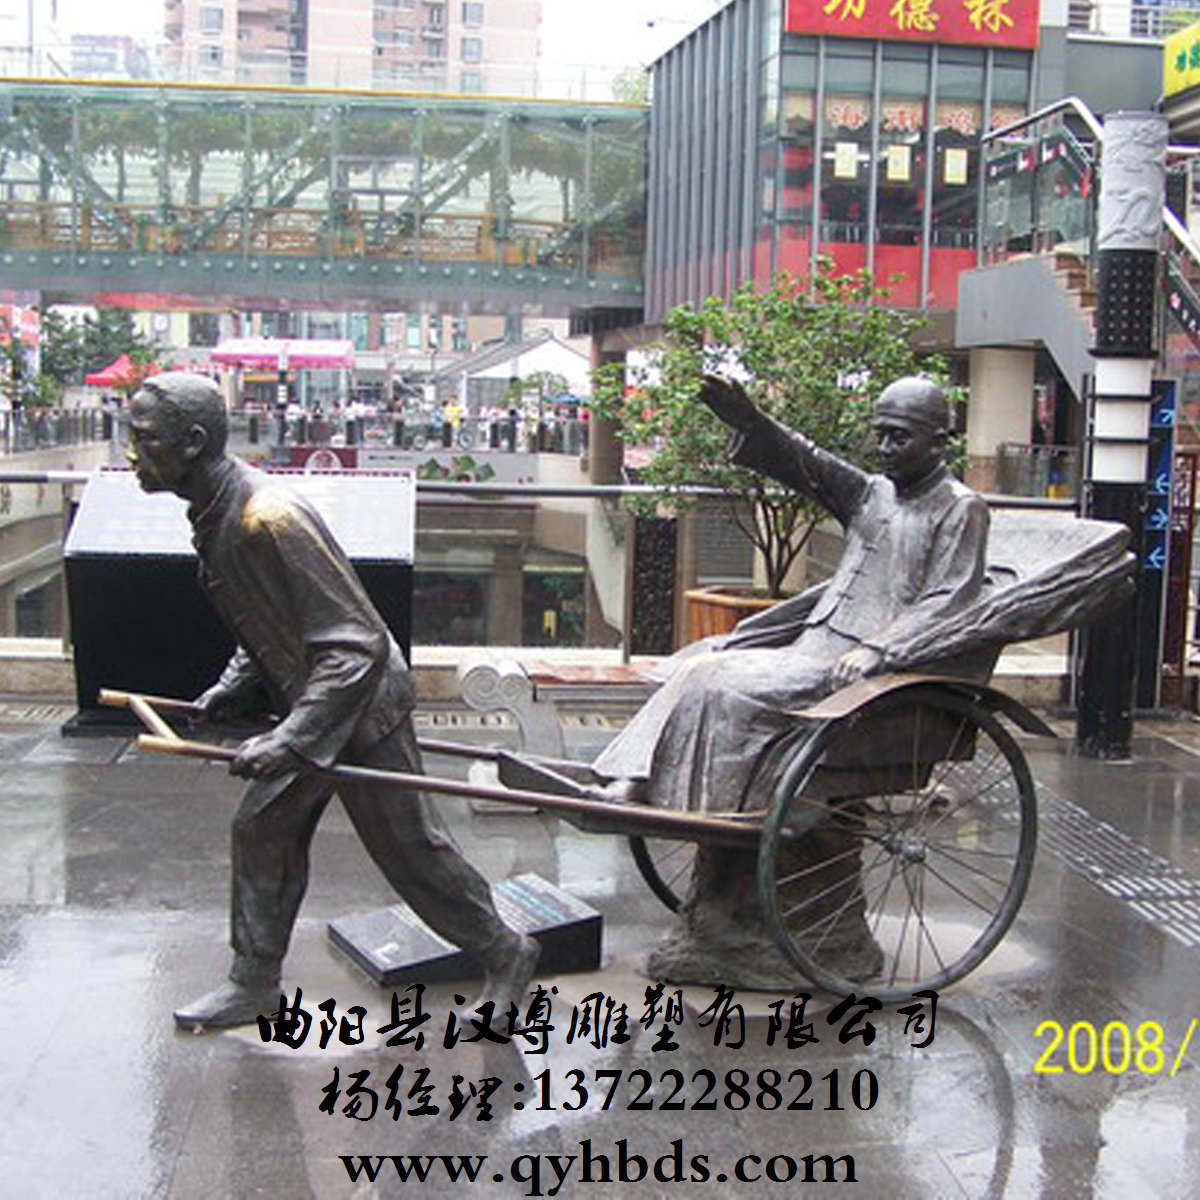 铜雕西方人物雕塑_中石园林_TDXFR-1008 - 河北中石园林工程有限公司